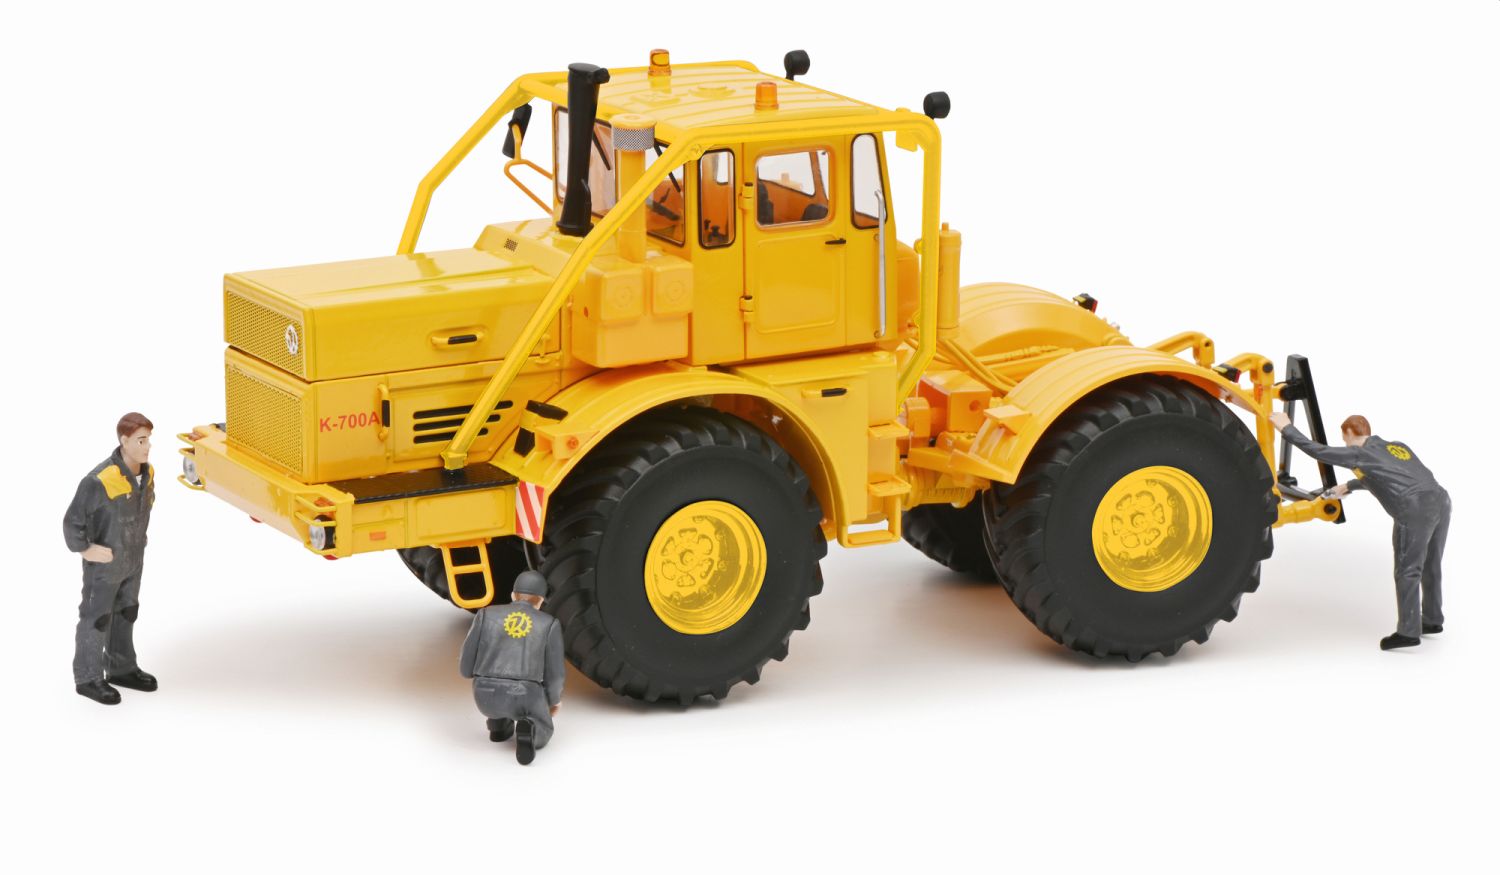 Schuco 450784600 - Traktor Kirovets K700 mit Figuren, 1:32